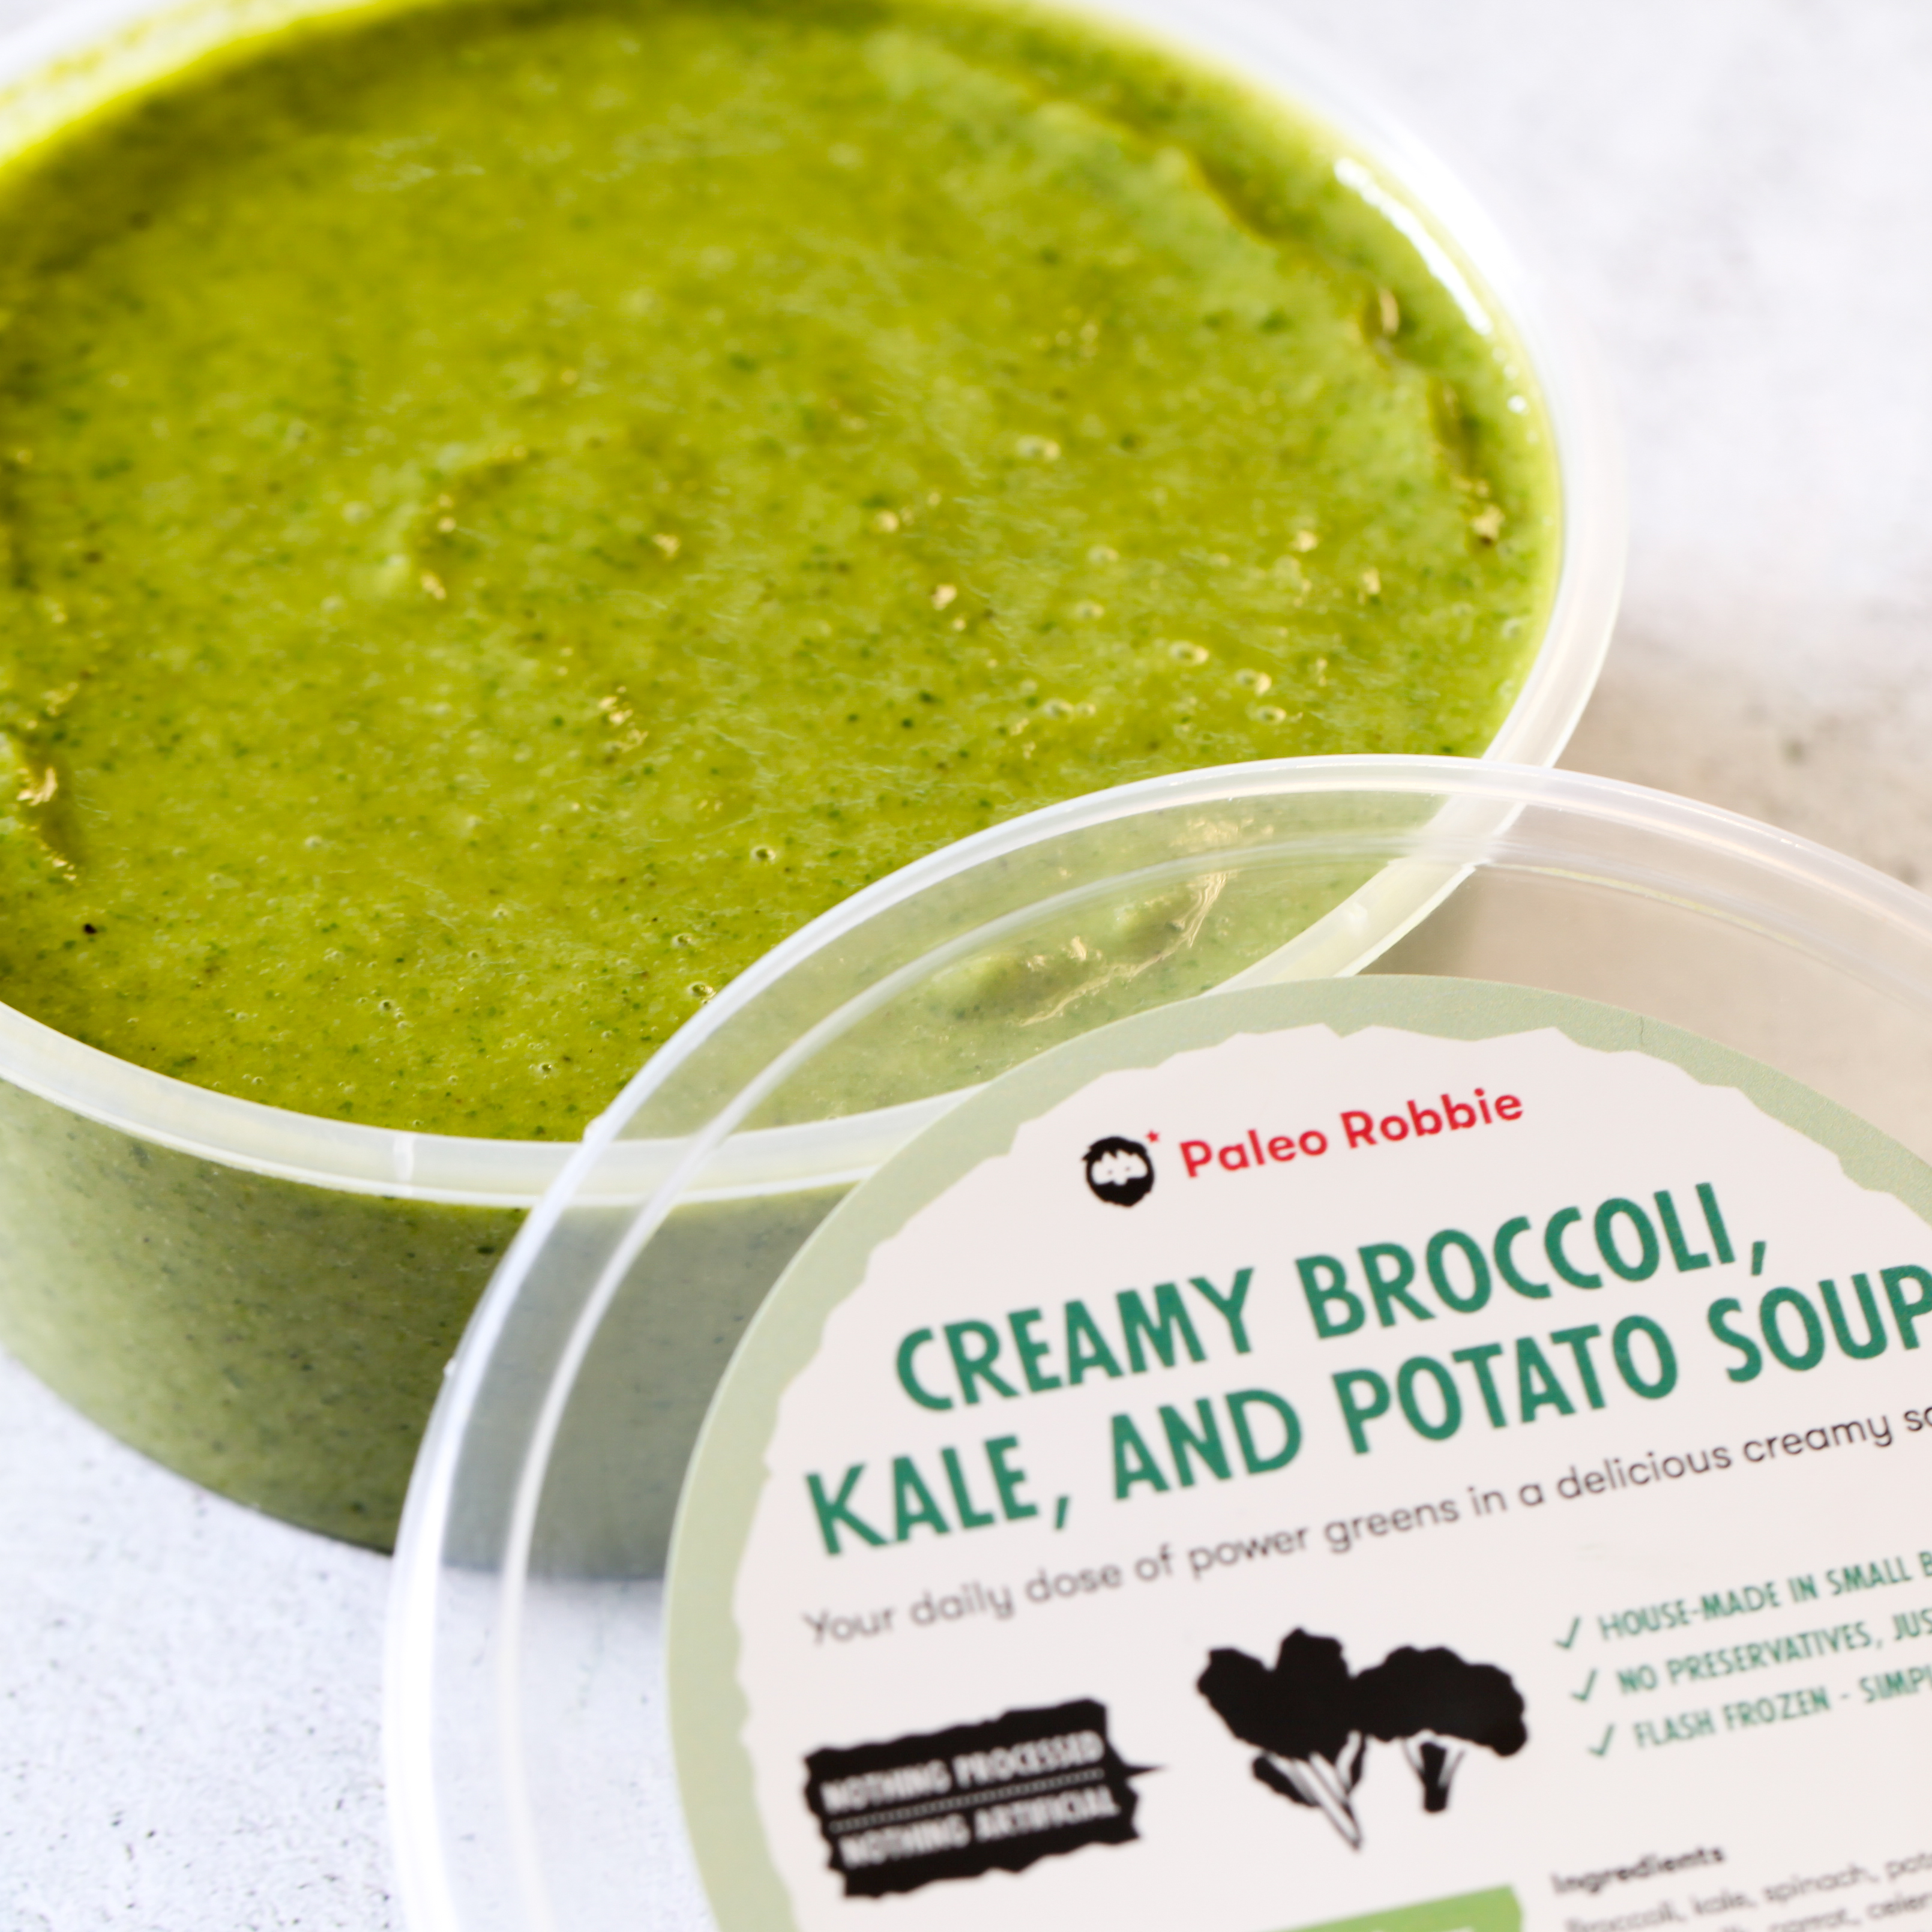 Creamy Broccoli, Kale & Potato Soup 330ml